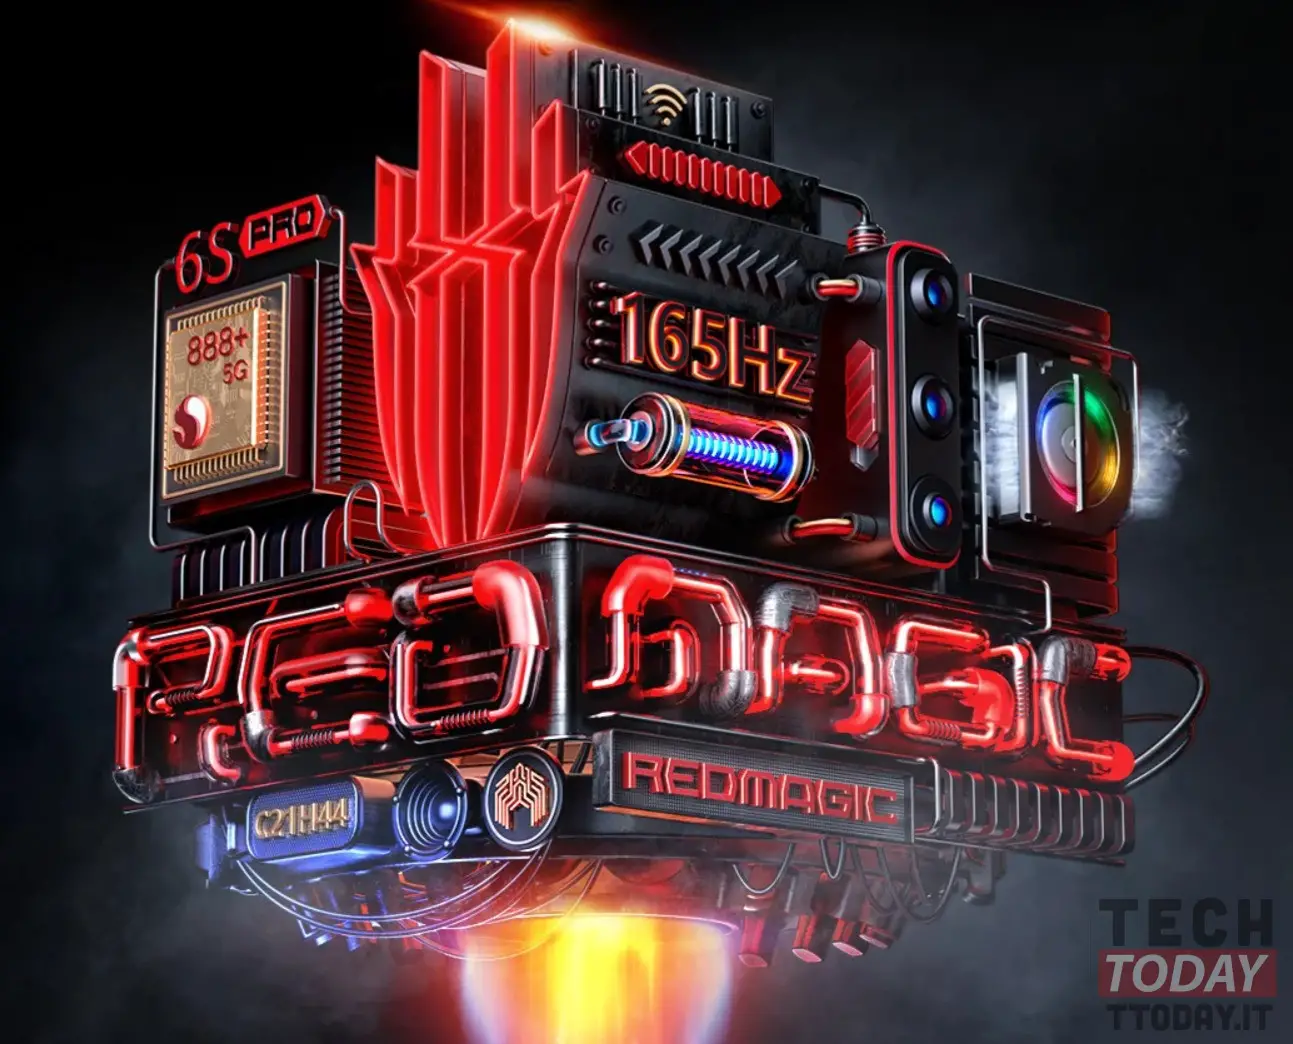 Red Magic 6S Pro